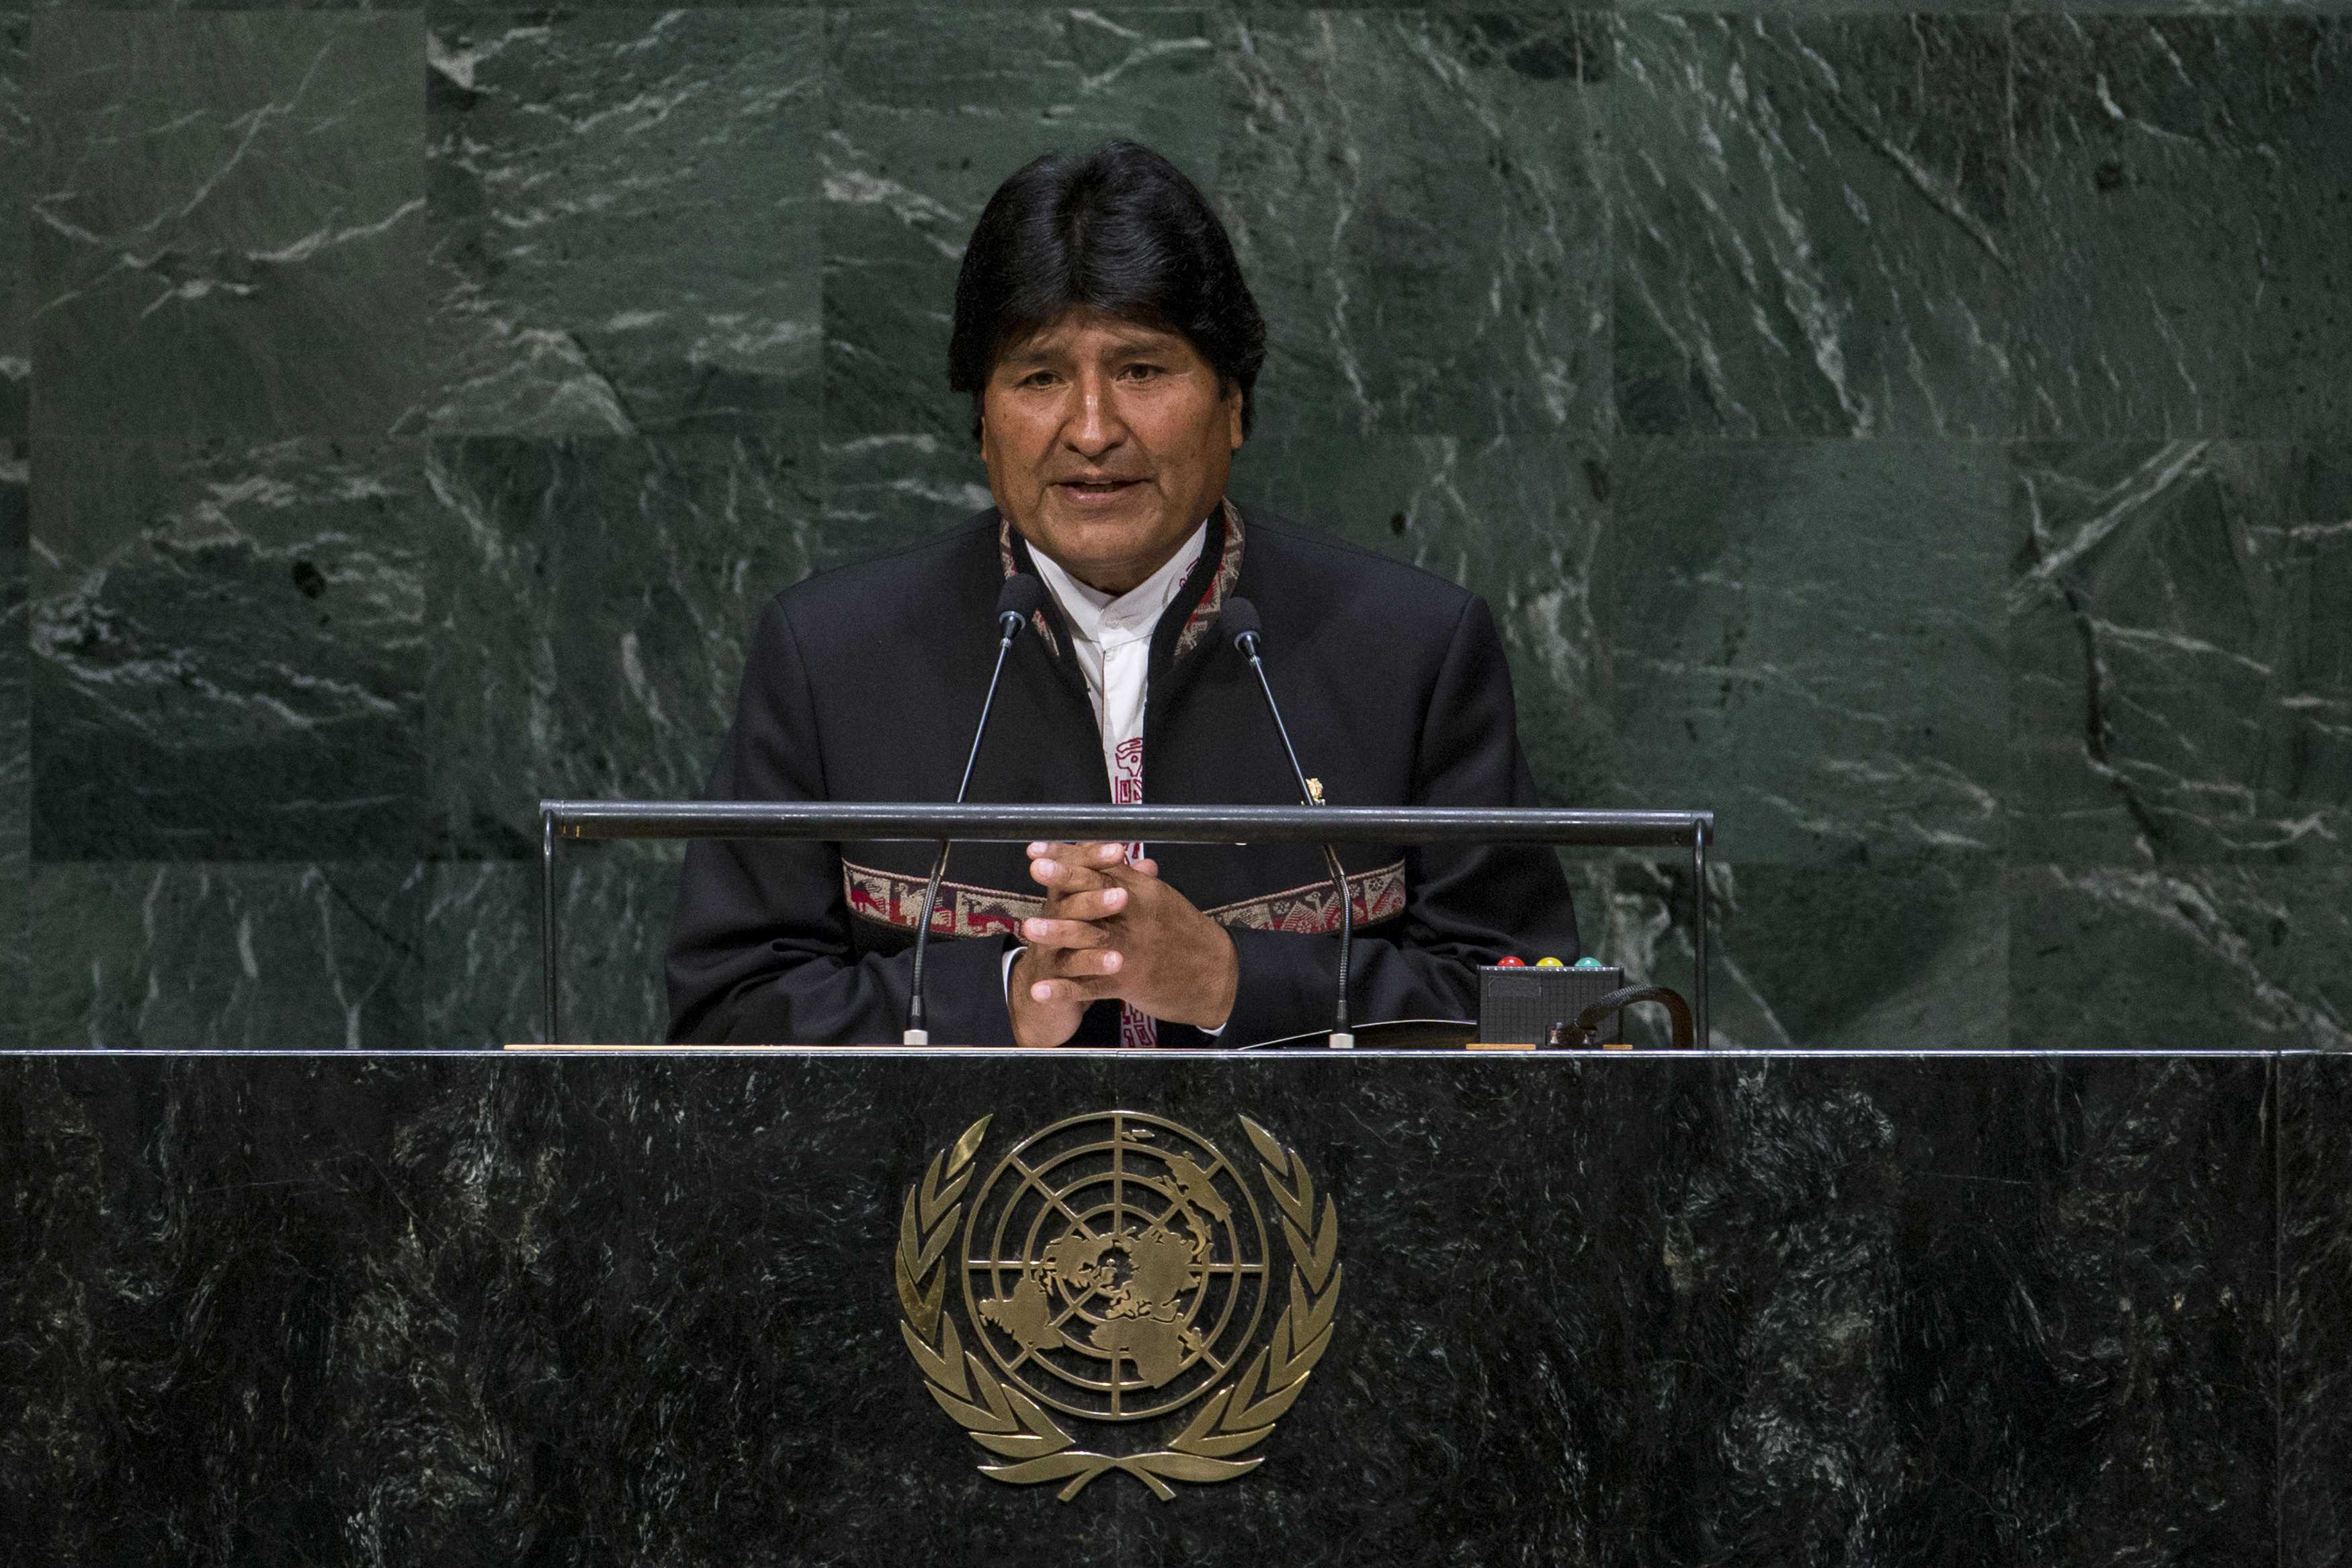 El Presidente boliviano hizo una fuerte crítica al sistema capitalista, pues considera que sólo contribuye al empobrecimiento de los pueblos. (Foto: Reuters)